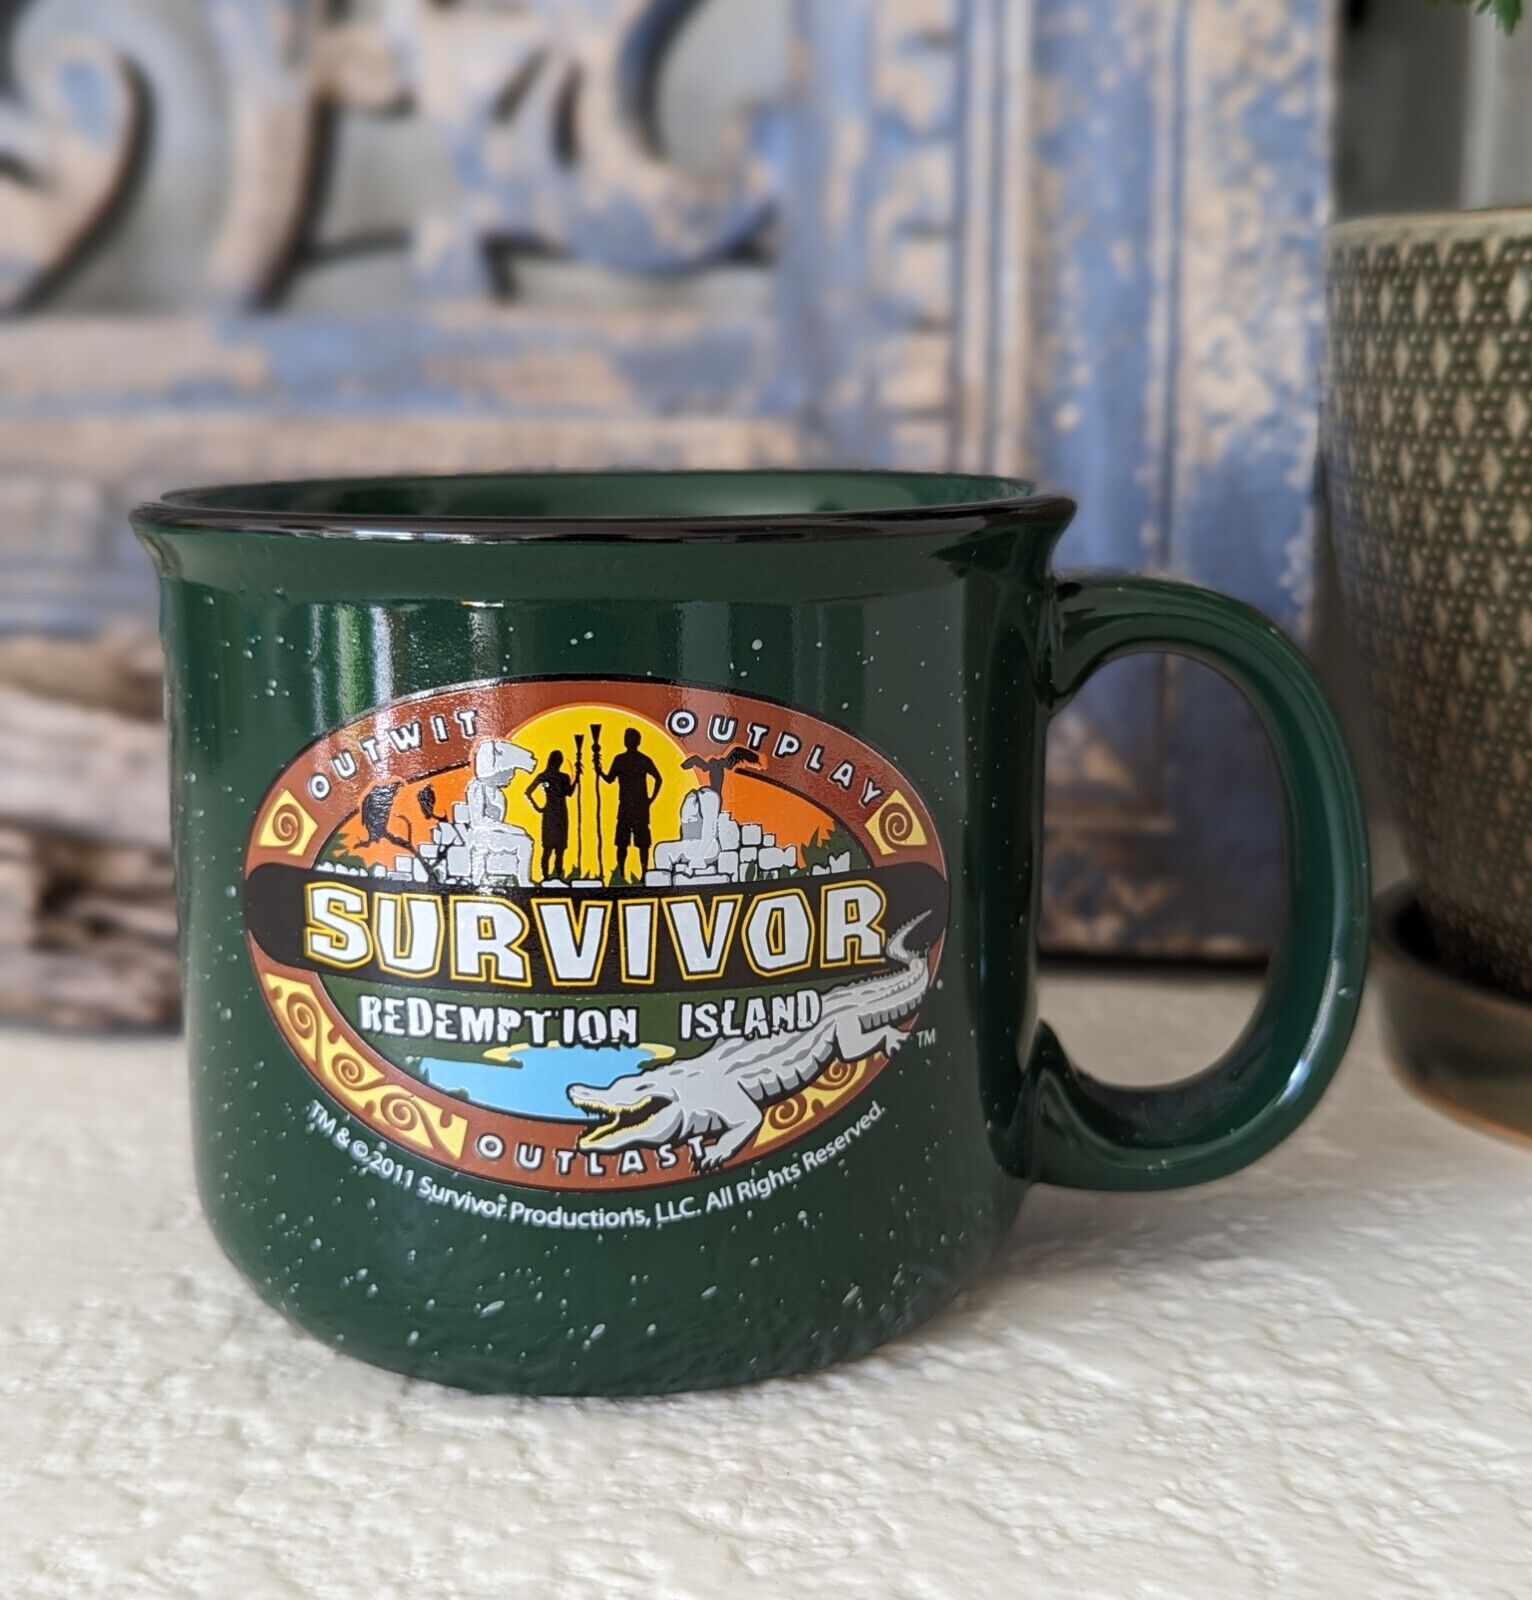 Survivor Season 22 2011 Redemption Island Collectors TV Memorabilia Coffee Mug